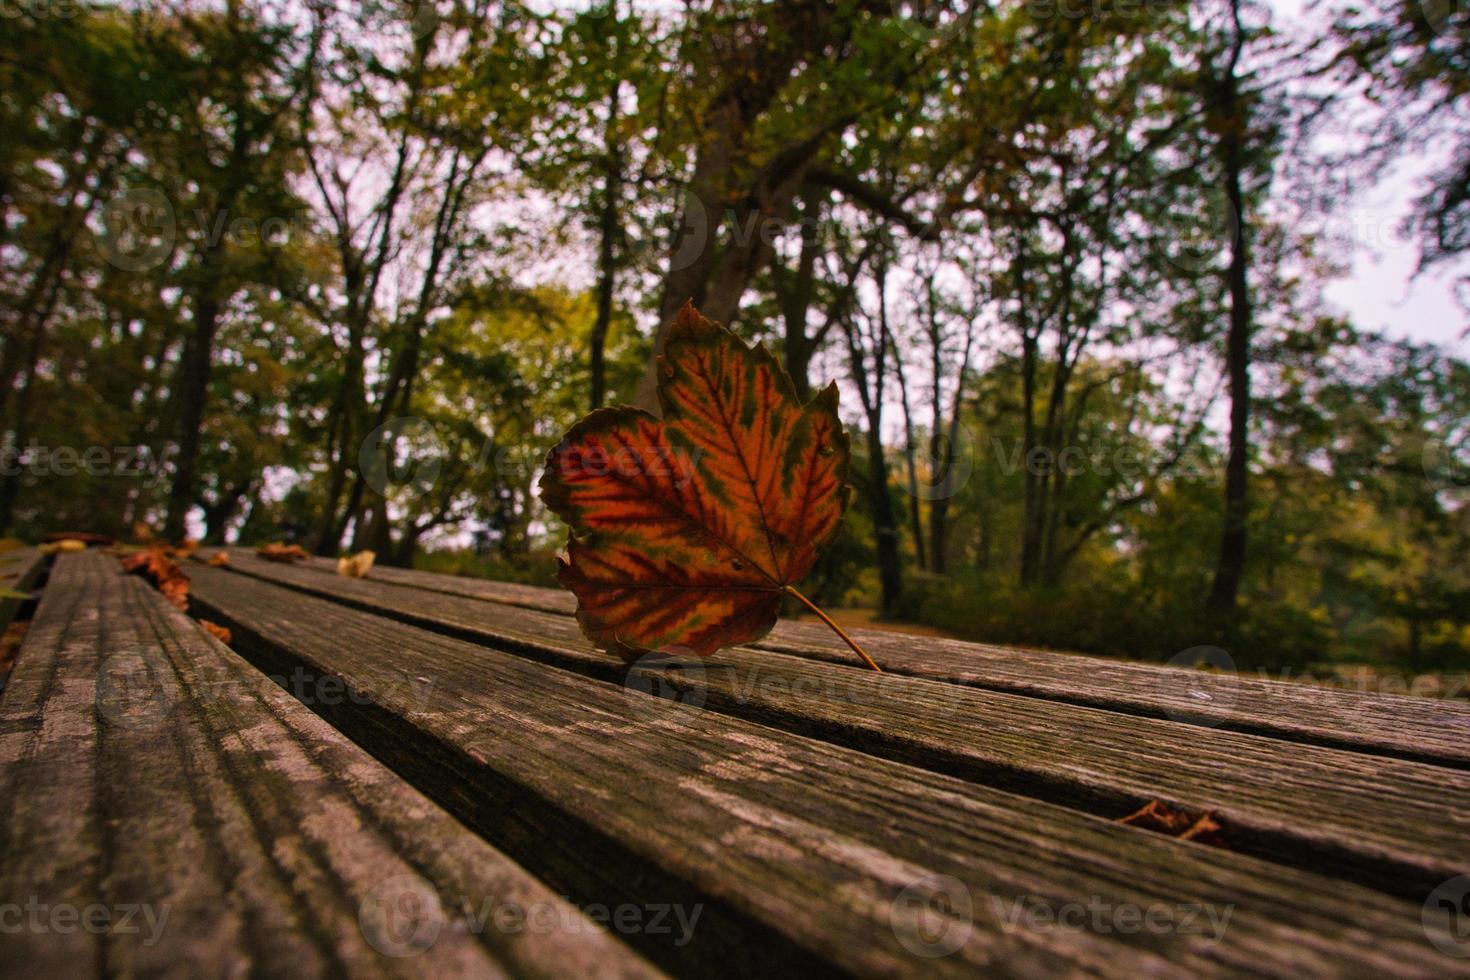 feuille colorée en automne sur un banc. feuilles d'automne dans le parc. arbres en arrière-plan photo